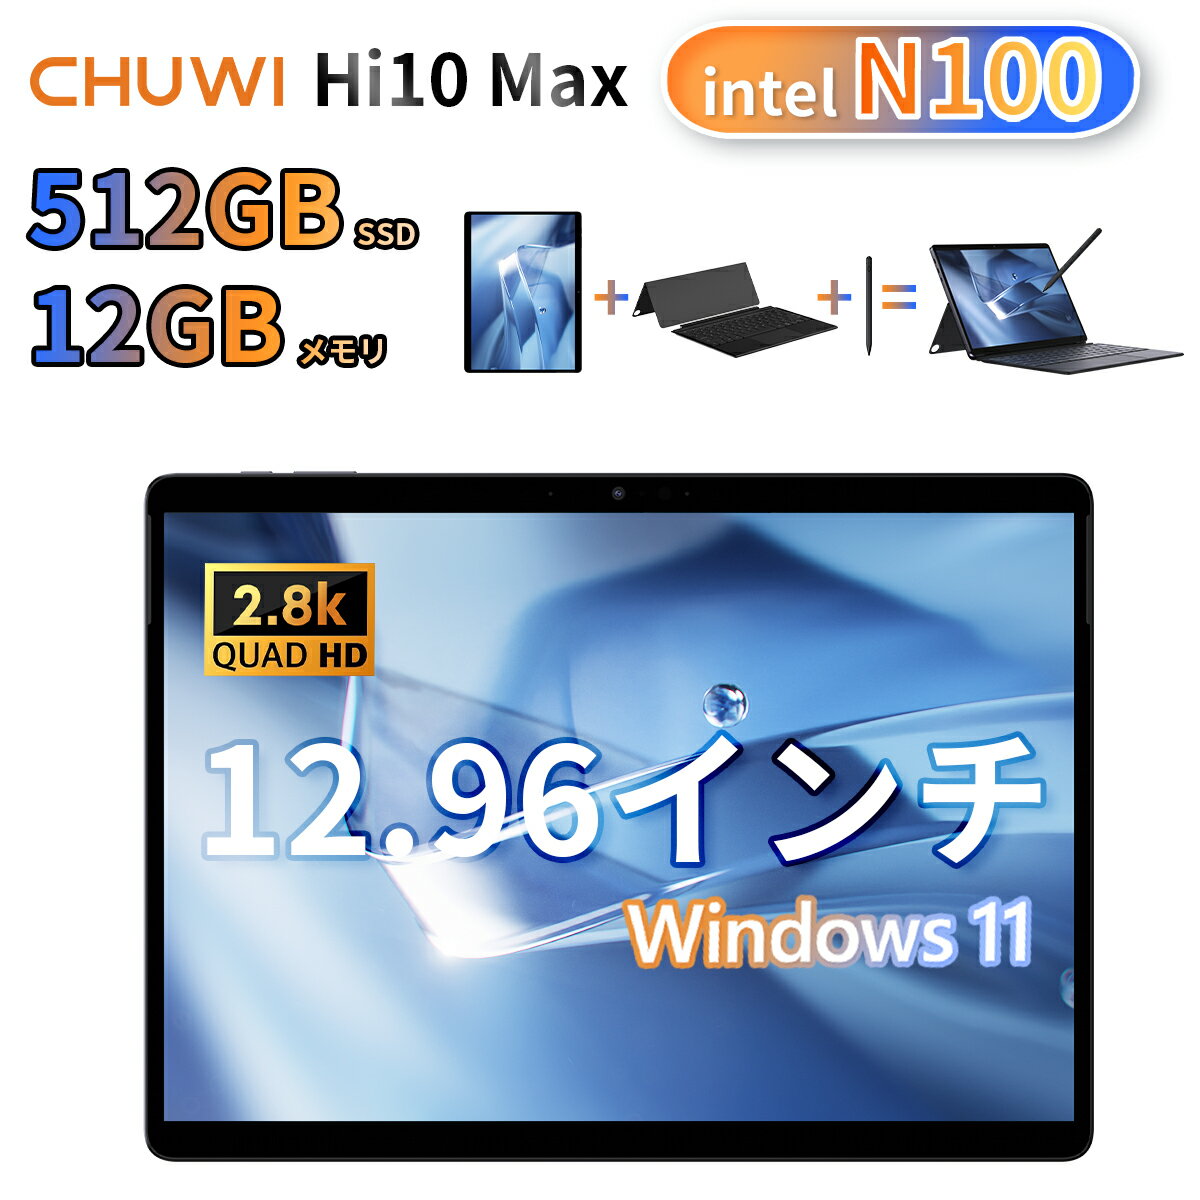 タブレット 【予約販売中】CHUWI 2024年6月発売 intel n100 2in1タブレット windows11 タブレットpc 512GB PCIE SSD / 12GB DDDR5 メモリ 12.95インチ 液晶ディスプレイ 2.8K 解像度 3:2ディスプレイ CHUWI Hi10 max WIFIモデル WIFI6 windows タブレット 新生活応援 3in1タブレット